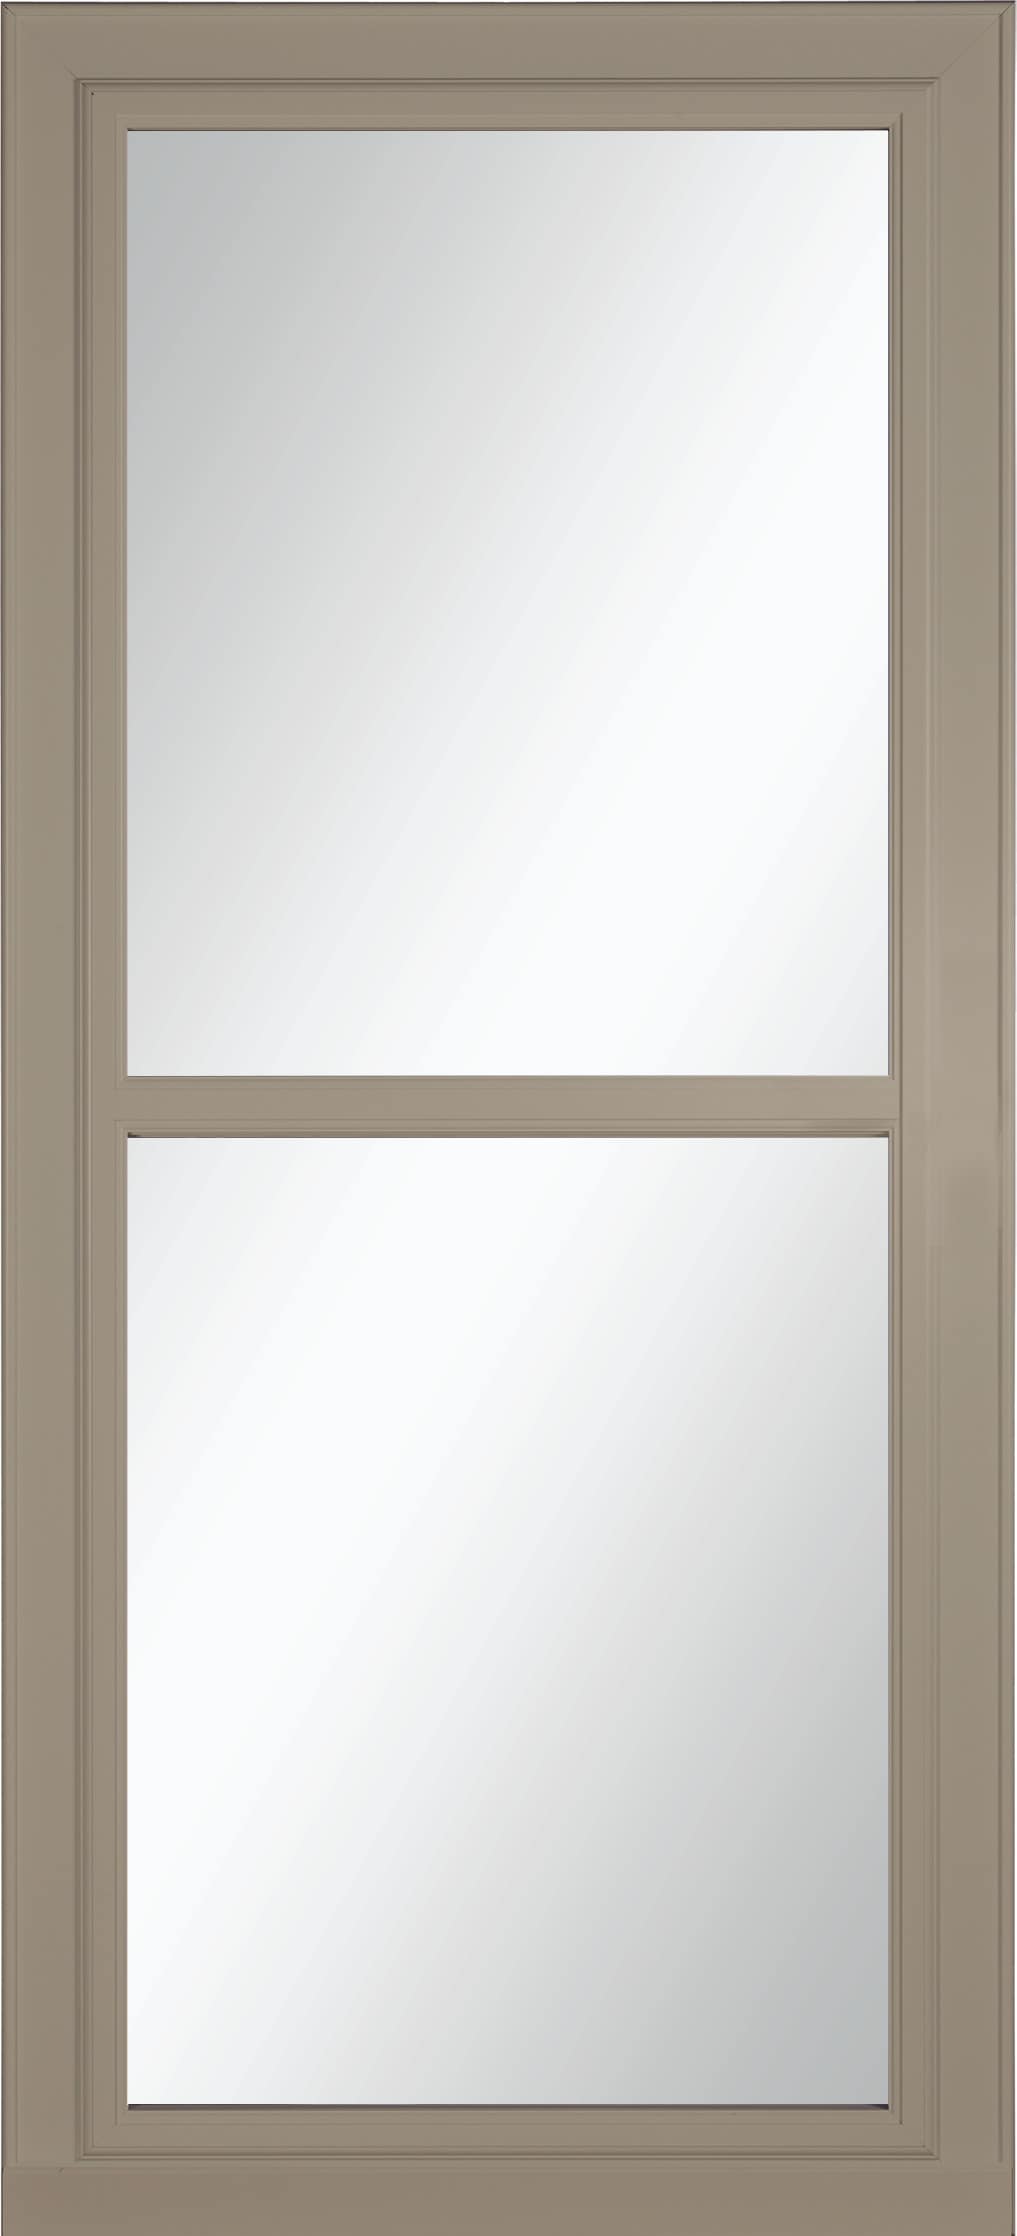 Tradewinds Selection 36-in x 96-in Sandstone Full-view Retractable Screen Aluminum Storm Door in Brown | - LARSON 14604099